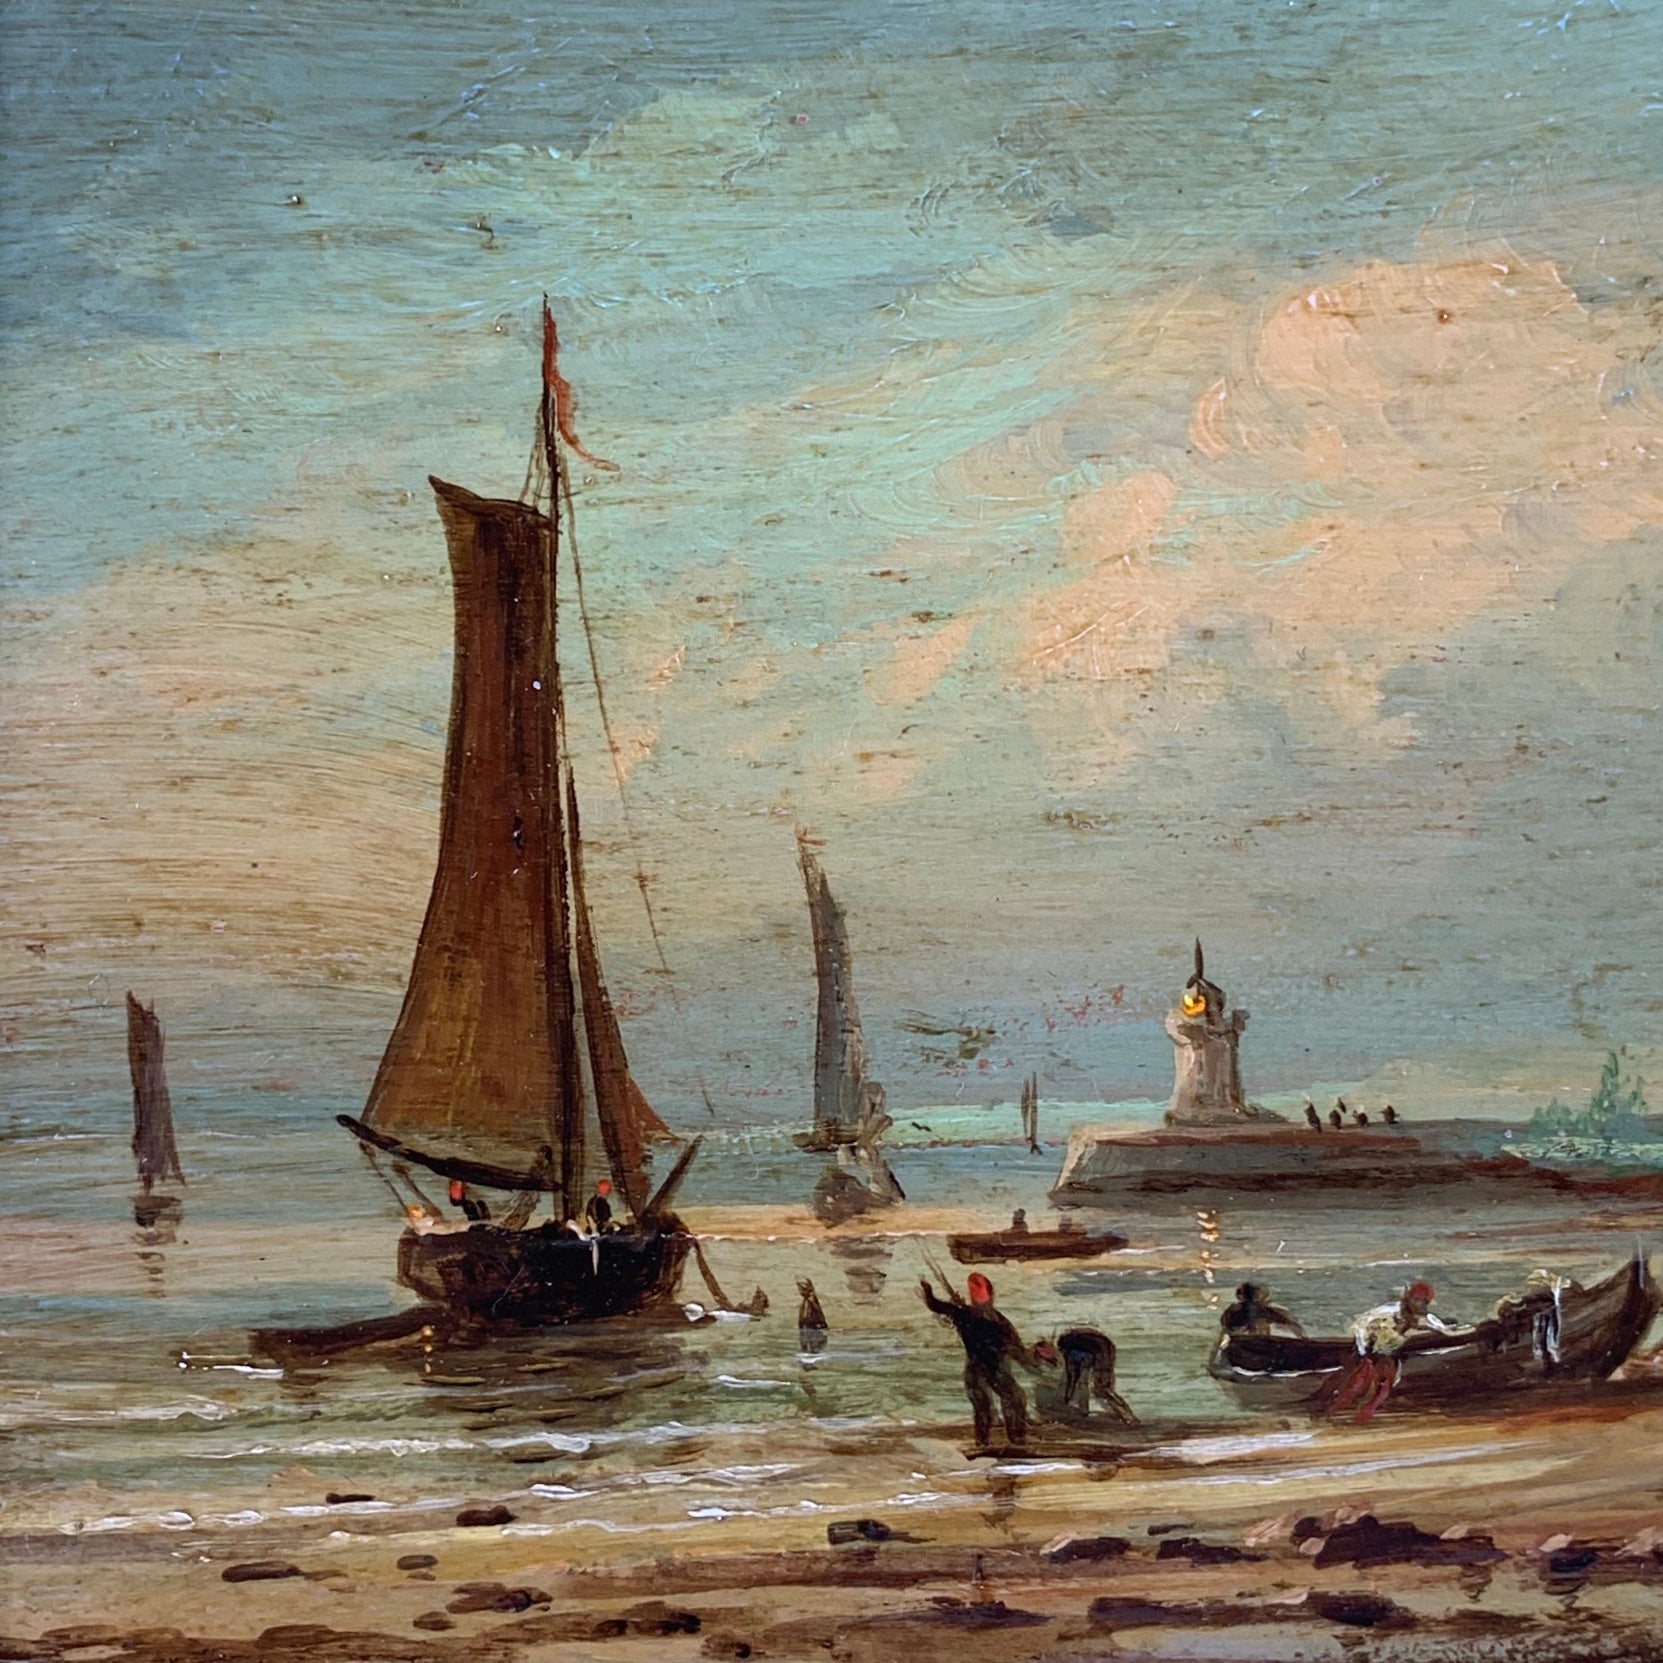 Tableau Huile sur bois, marine, retour de pêche. 19ème siècle.